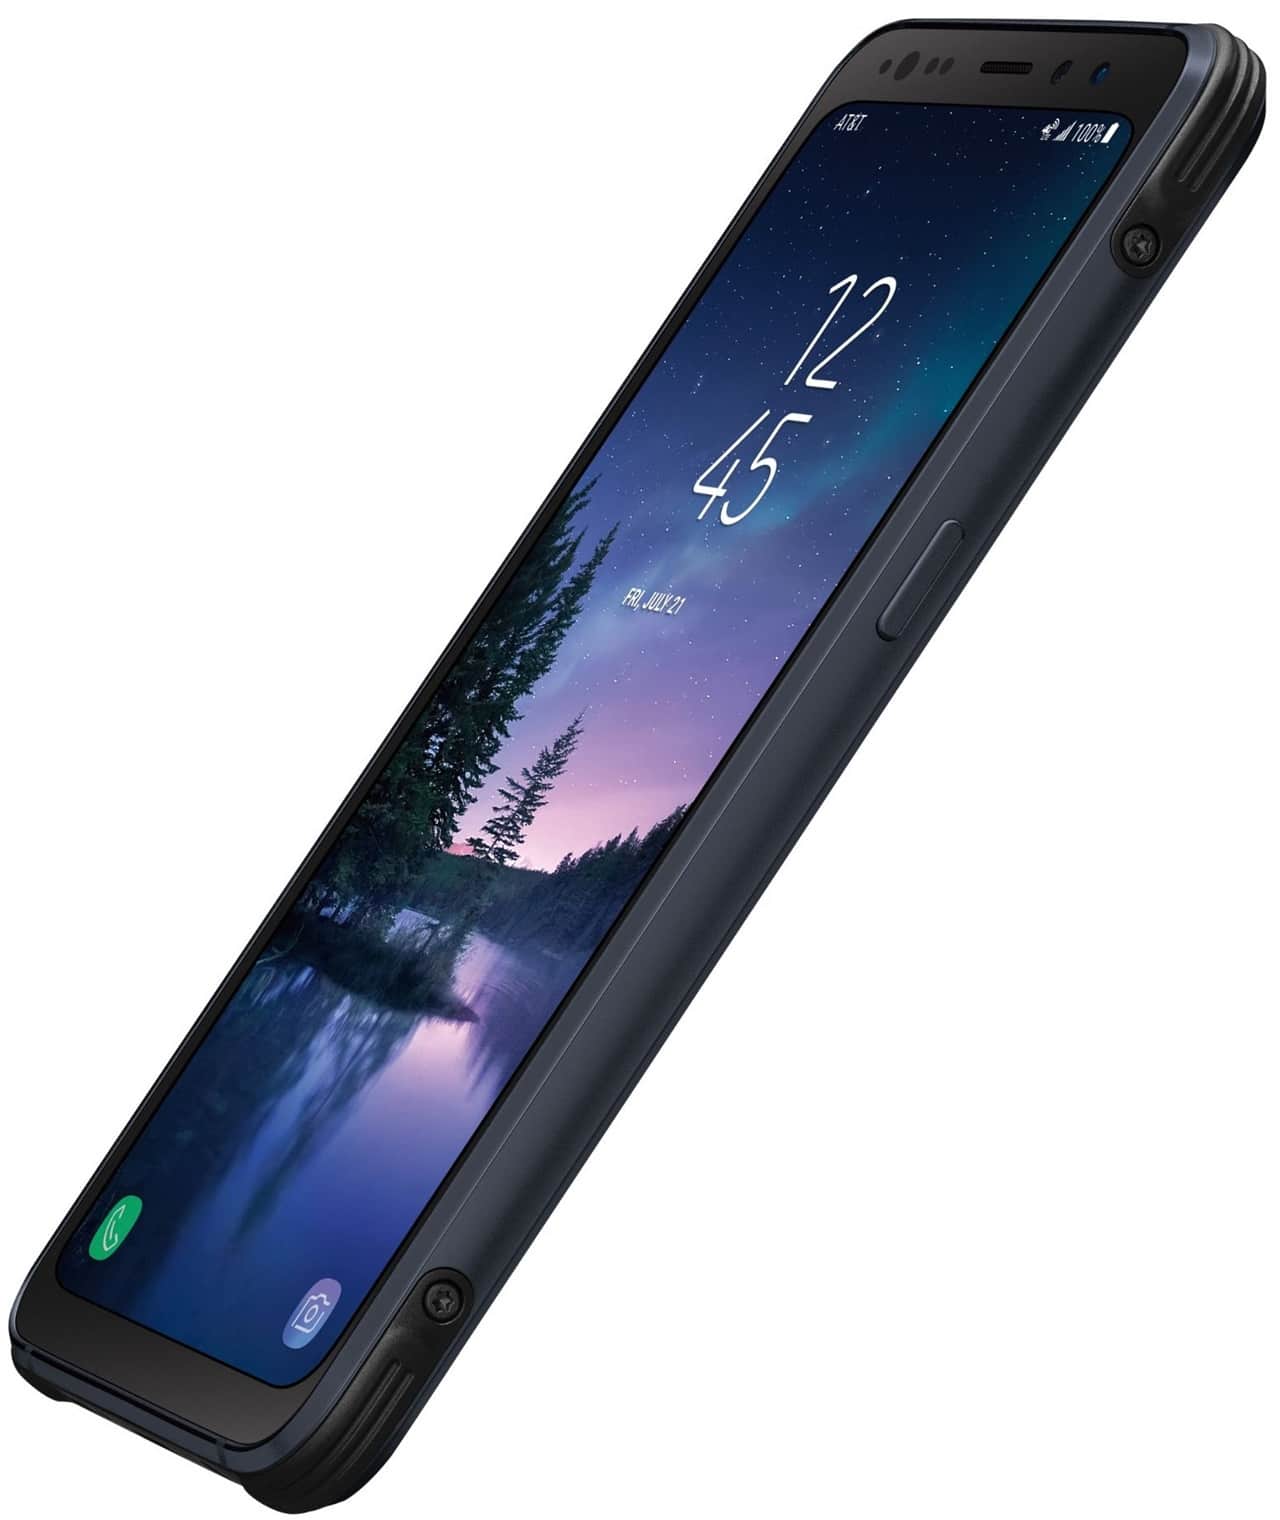 Samsung Galaxy S8 Active high resolution render